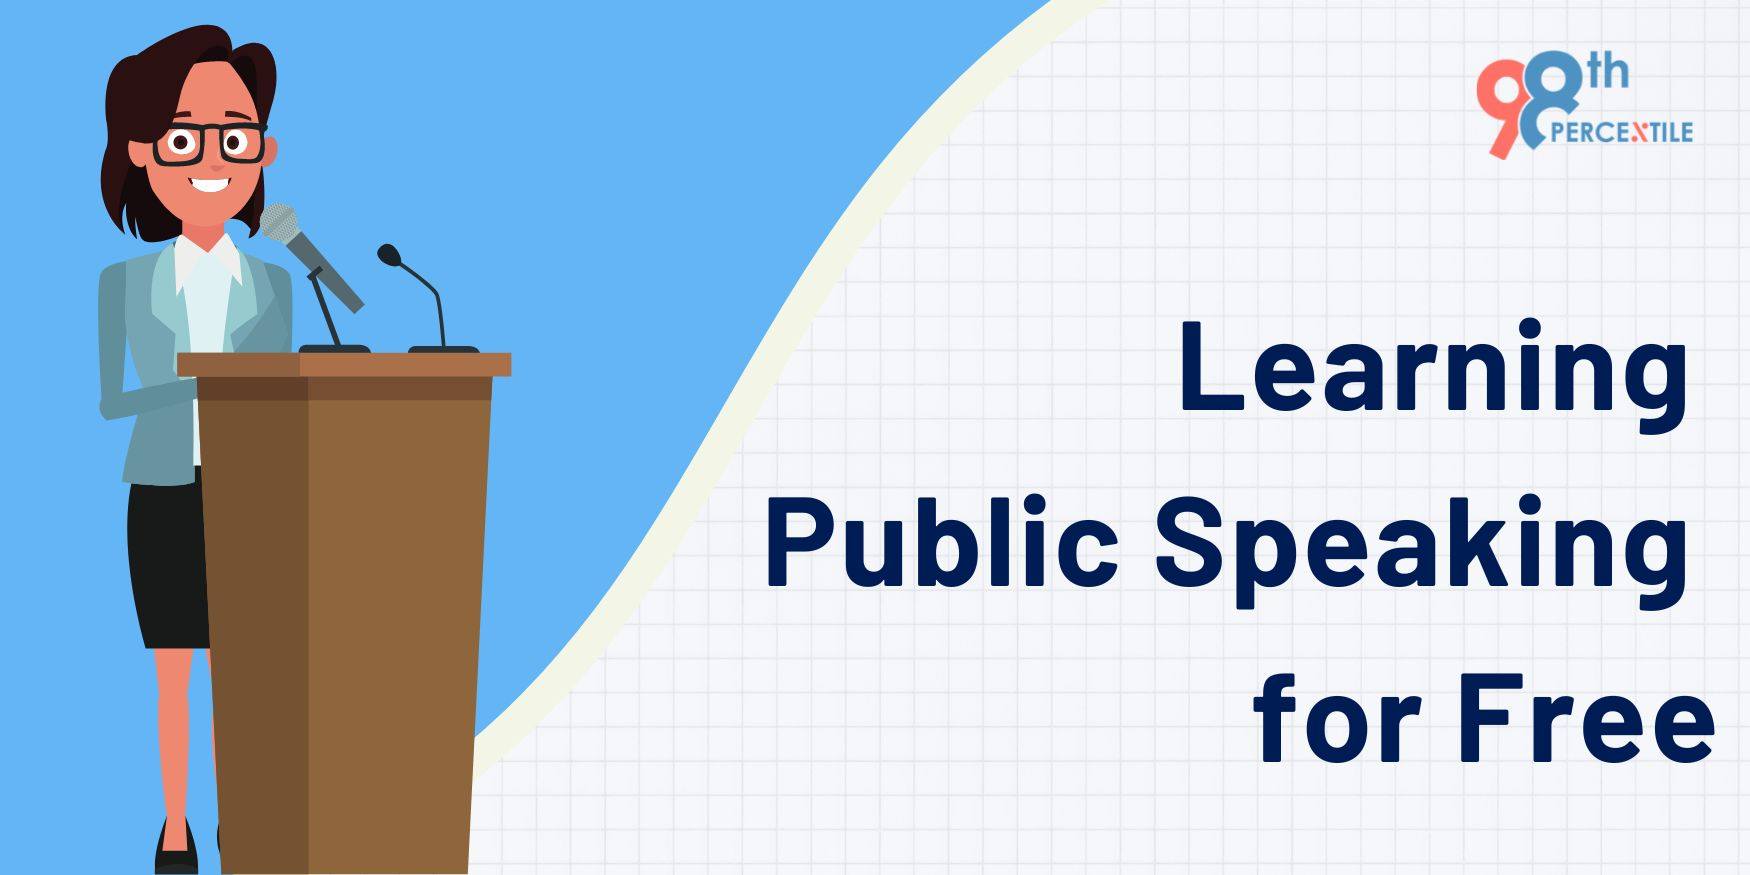 Learning public speaking